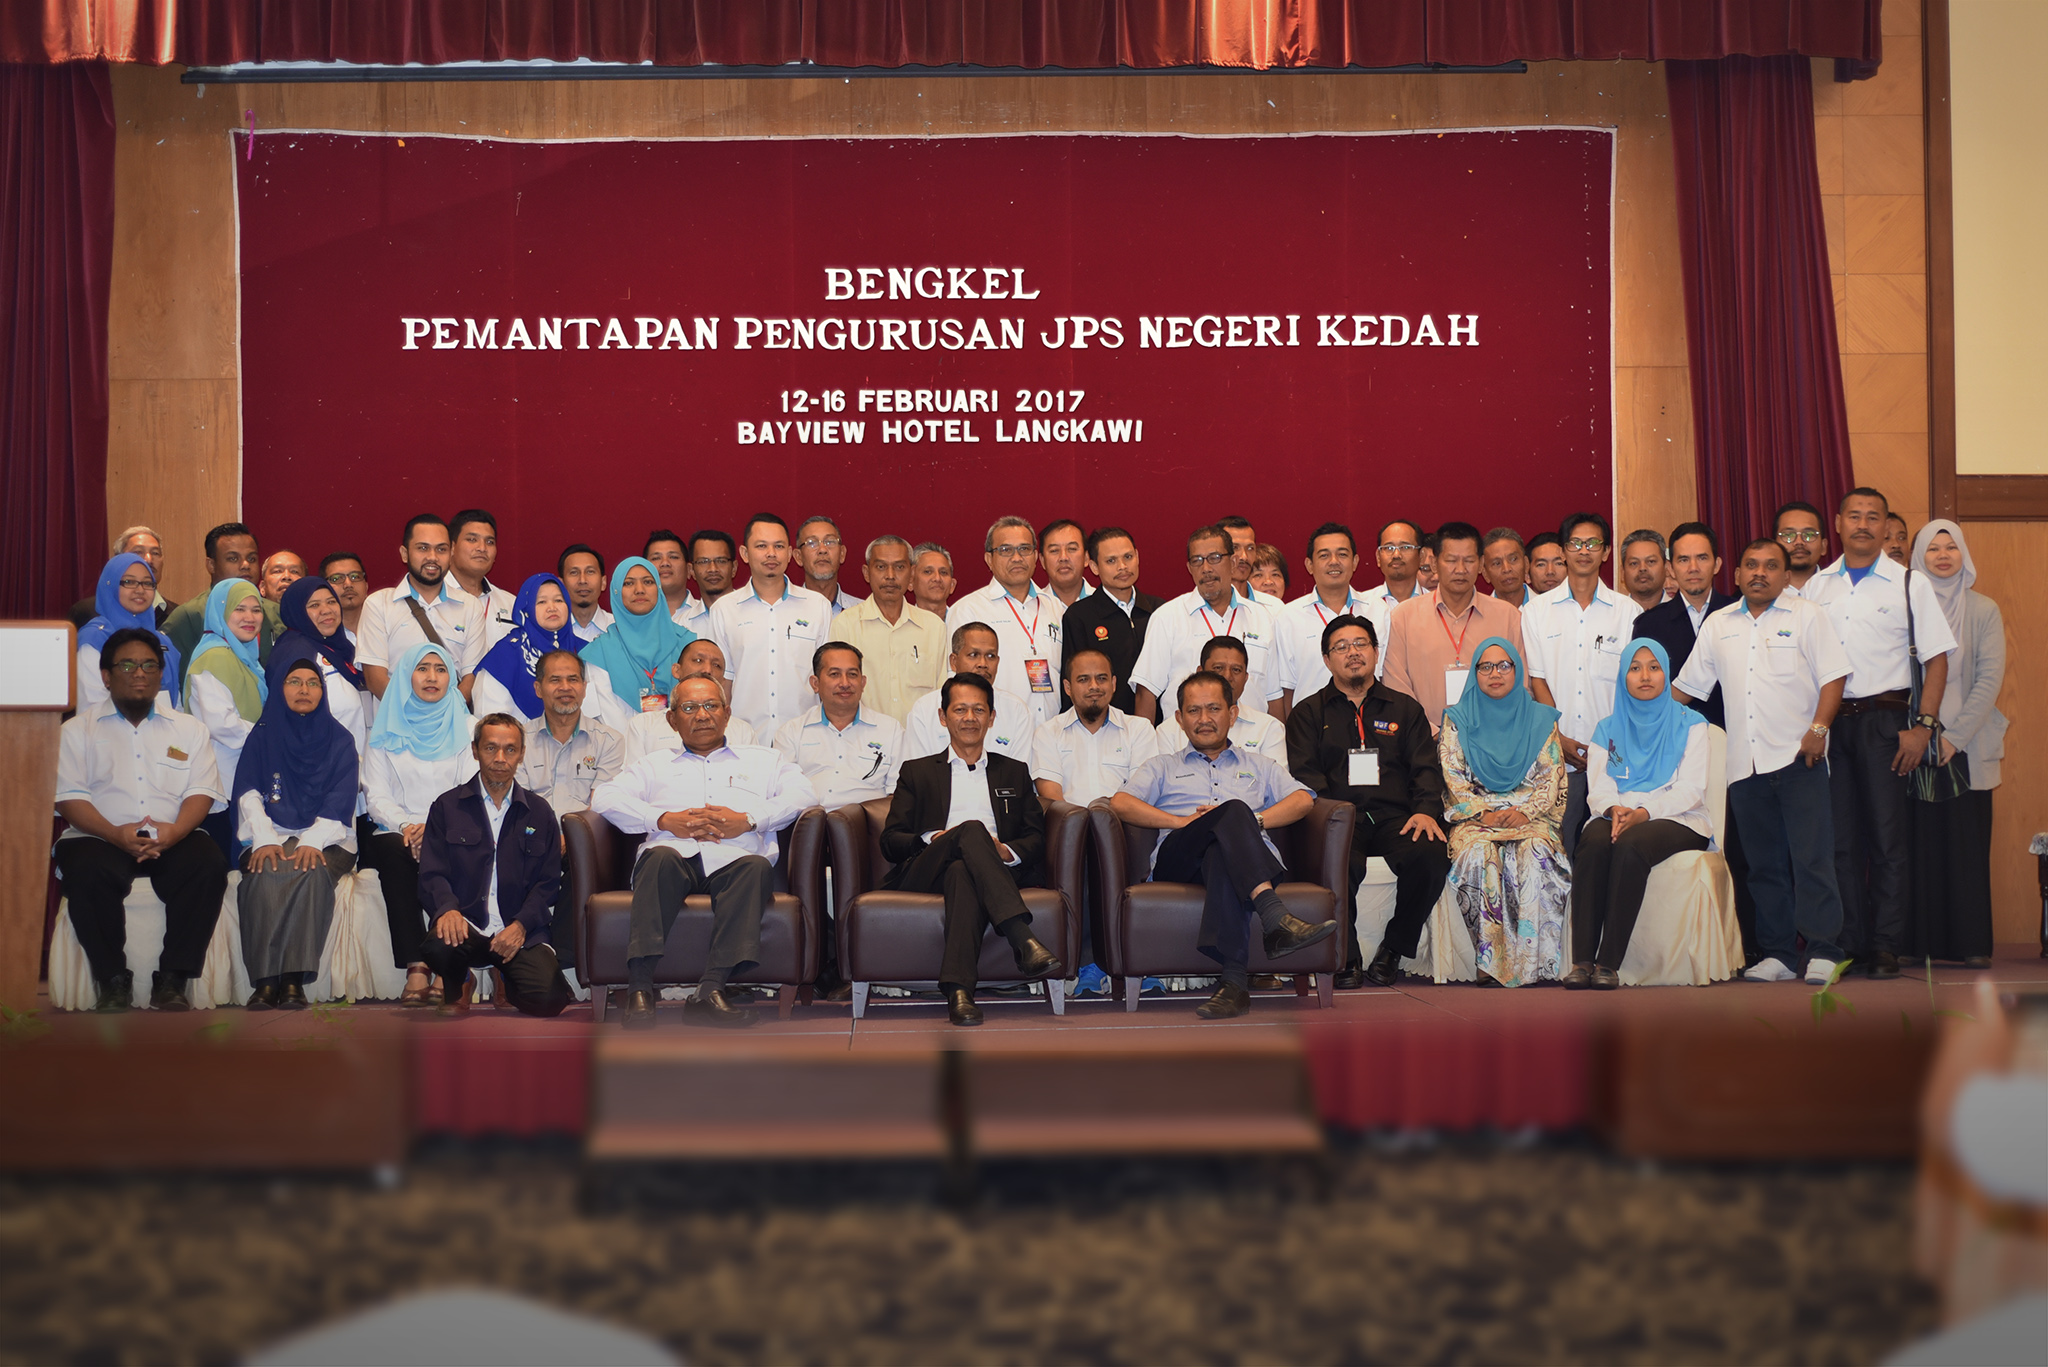 Bengkel Pemantapan Pengurusan JPS Kedah 2017